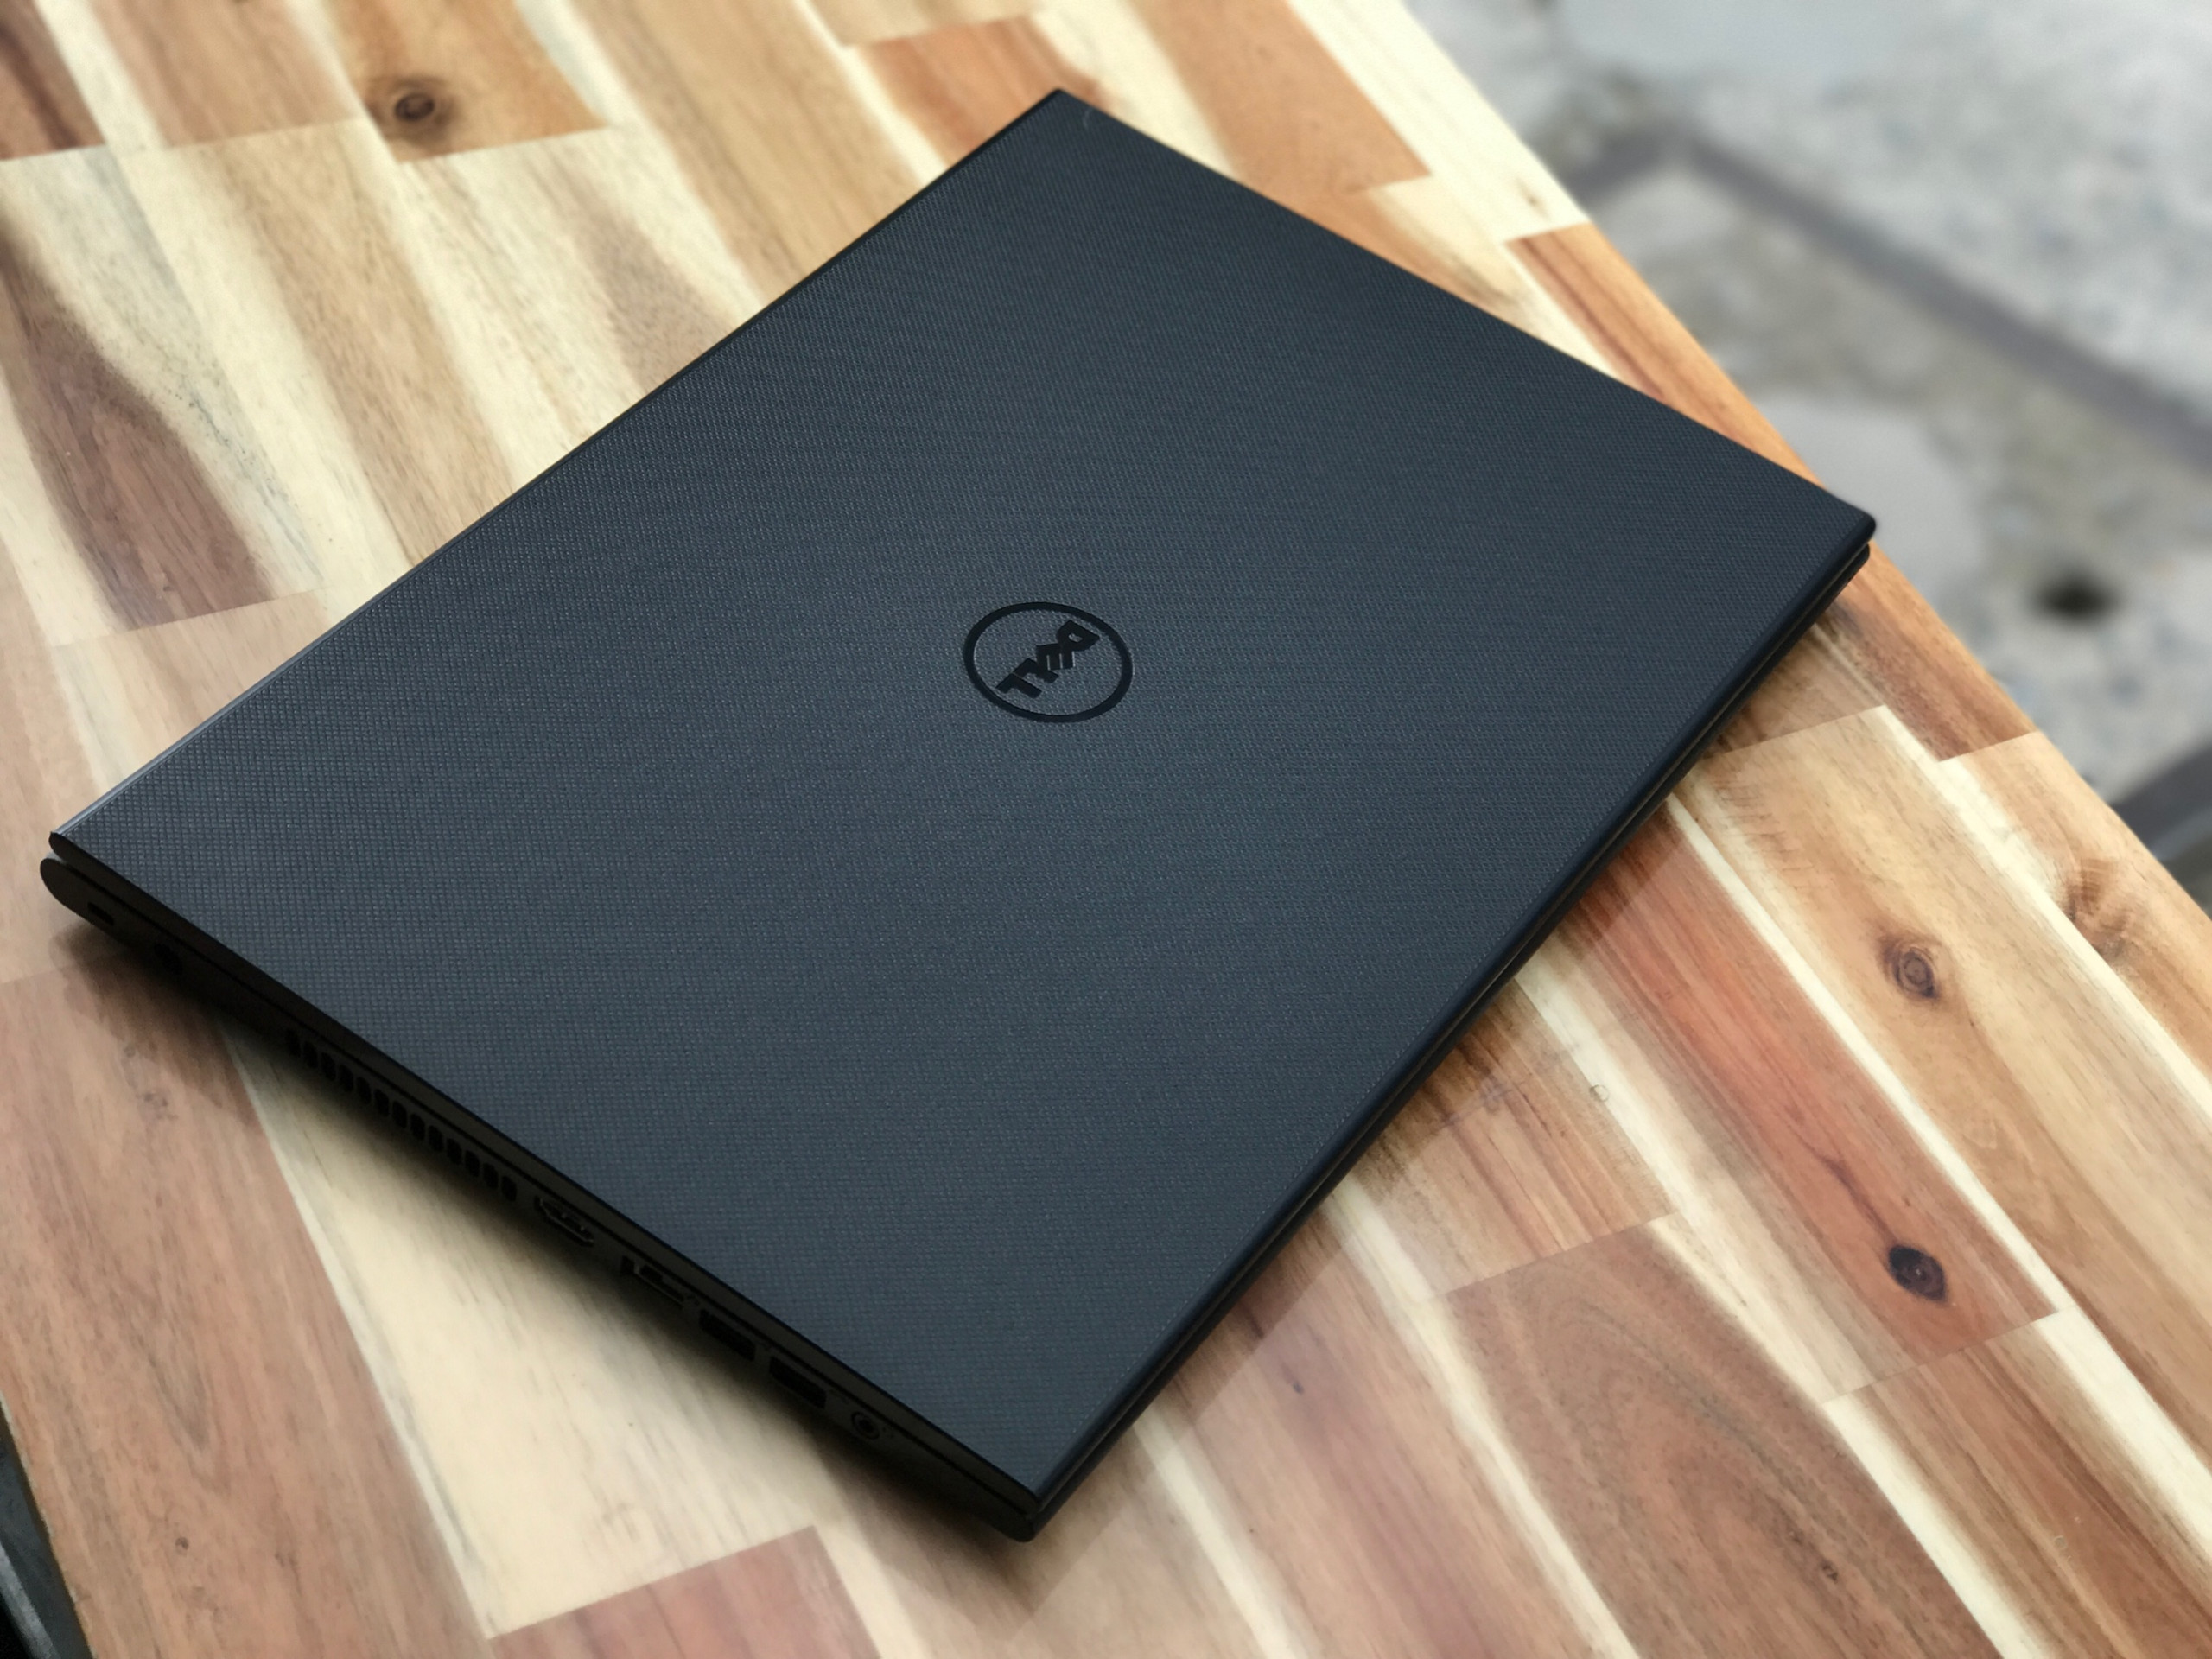 Laptop Dell Inspiron 3542, i3 4005U 4G 500G Vga Nvidia GT820M  đẹp zin 100% Giá rẻ